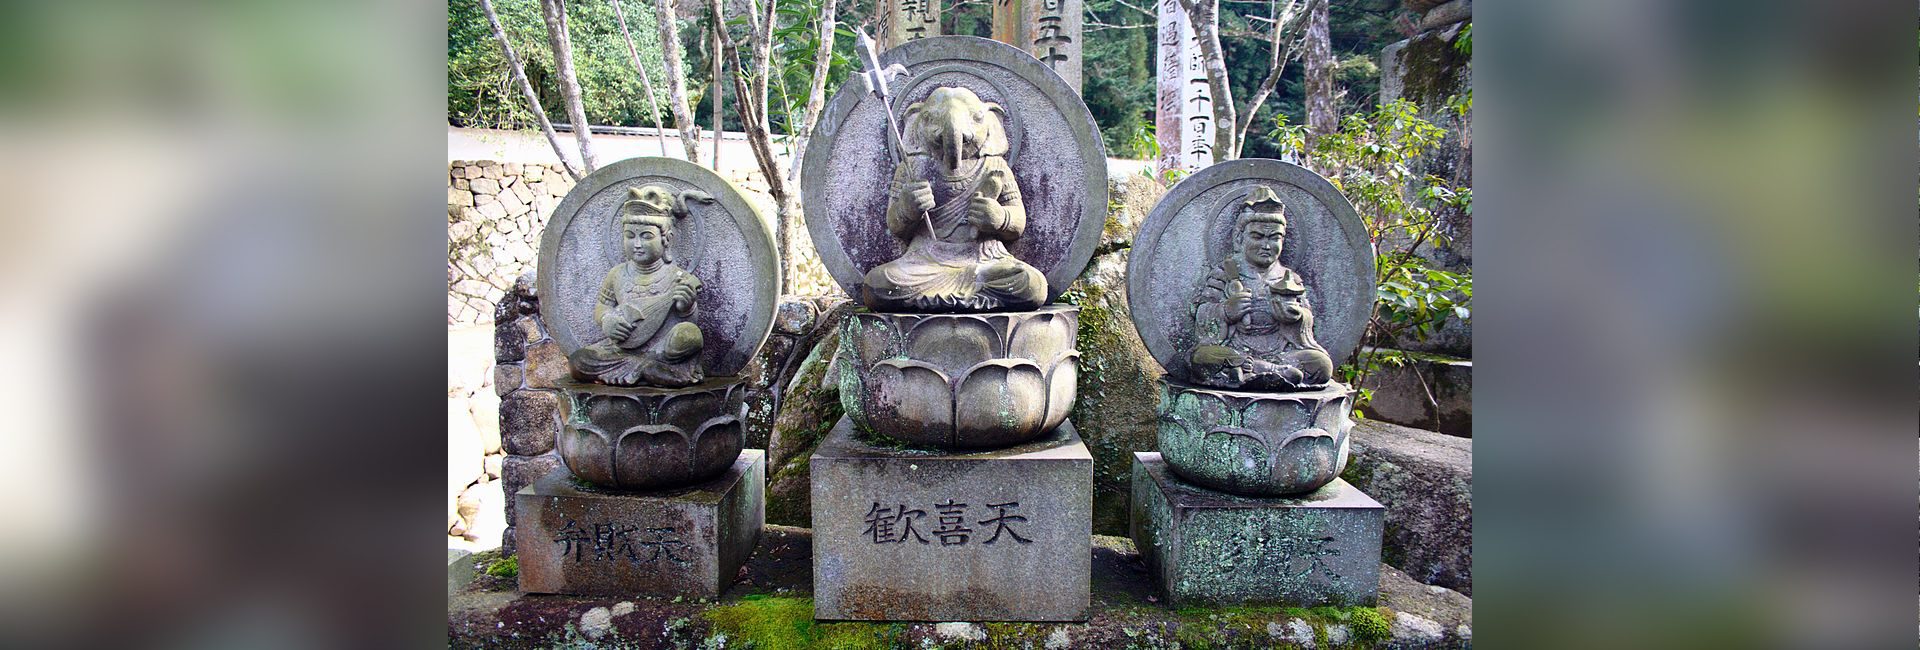 Le dieu asiatique : suivre les traces de Lord Ganesha